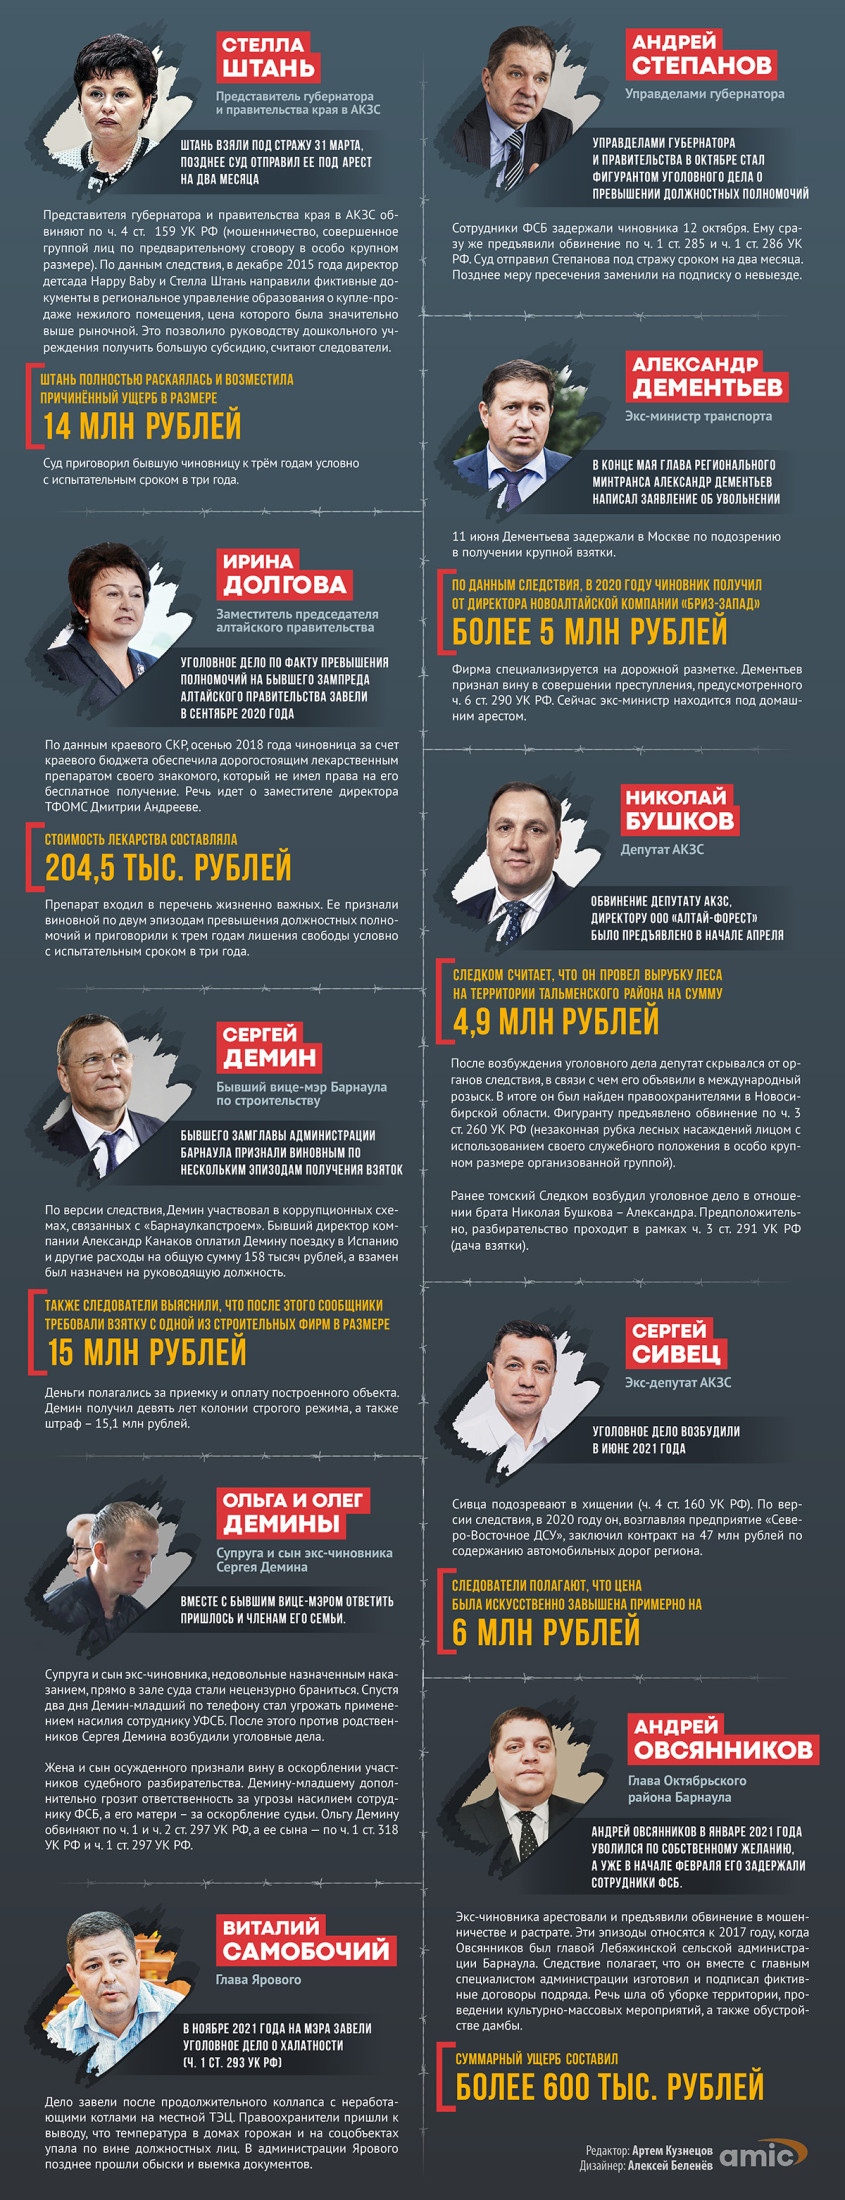 Степанов, Штань и Демины. Какими уголовными делами запомнился 2021 год. Инфографика